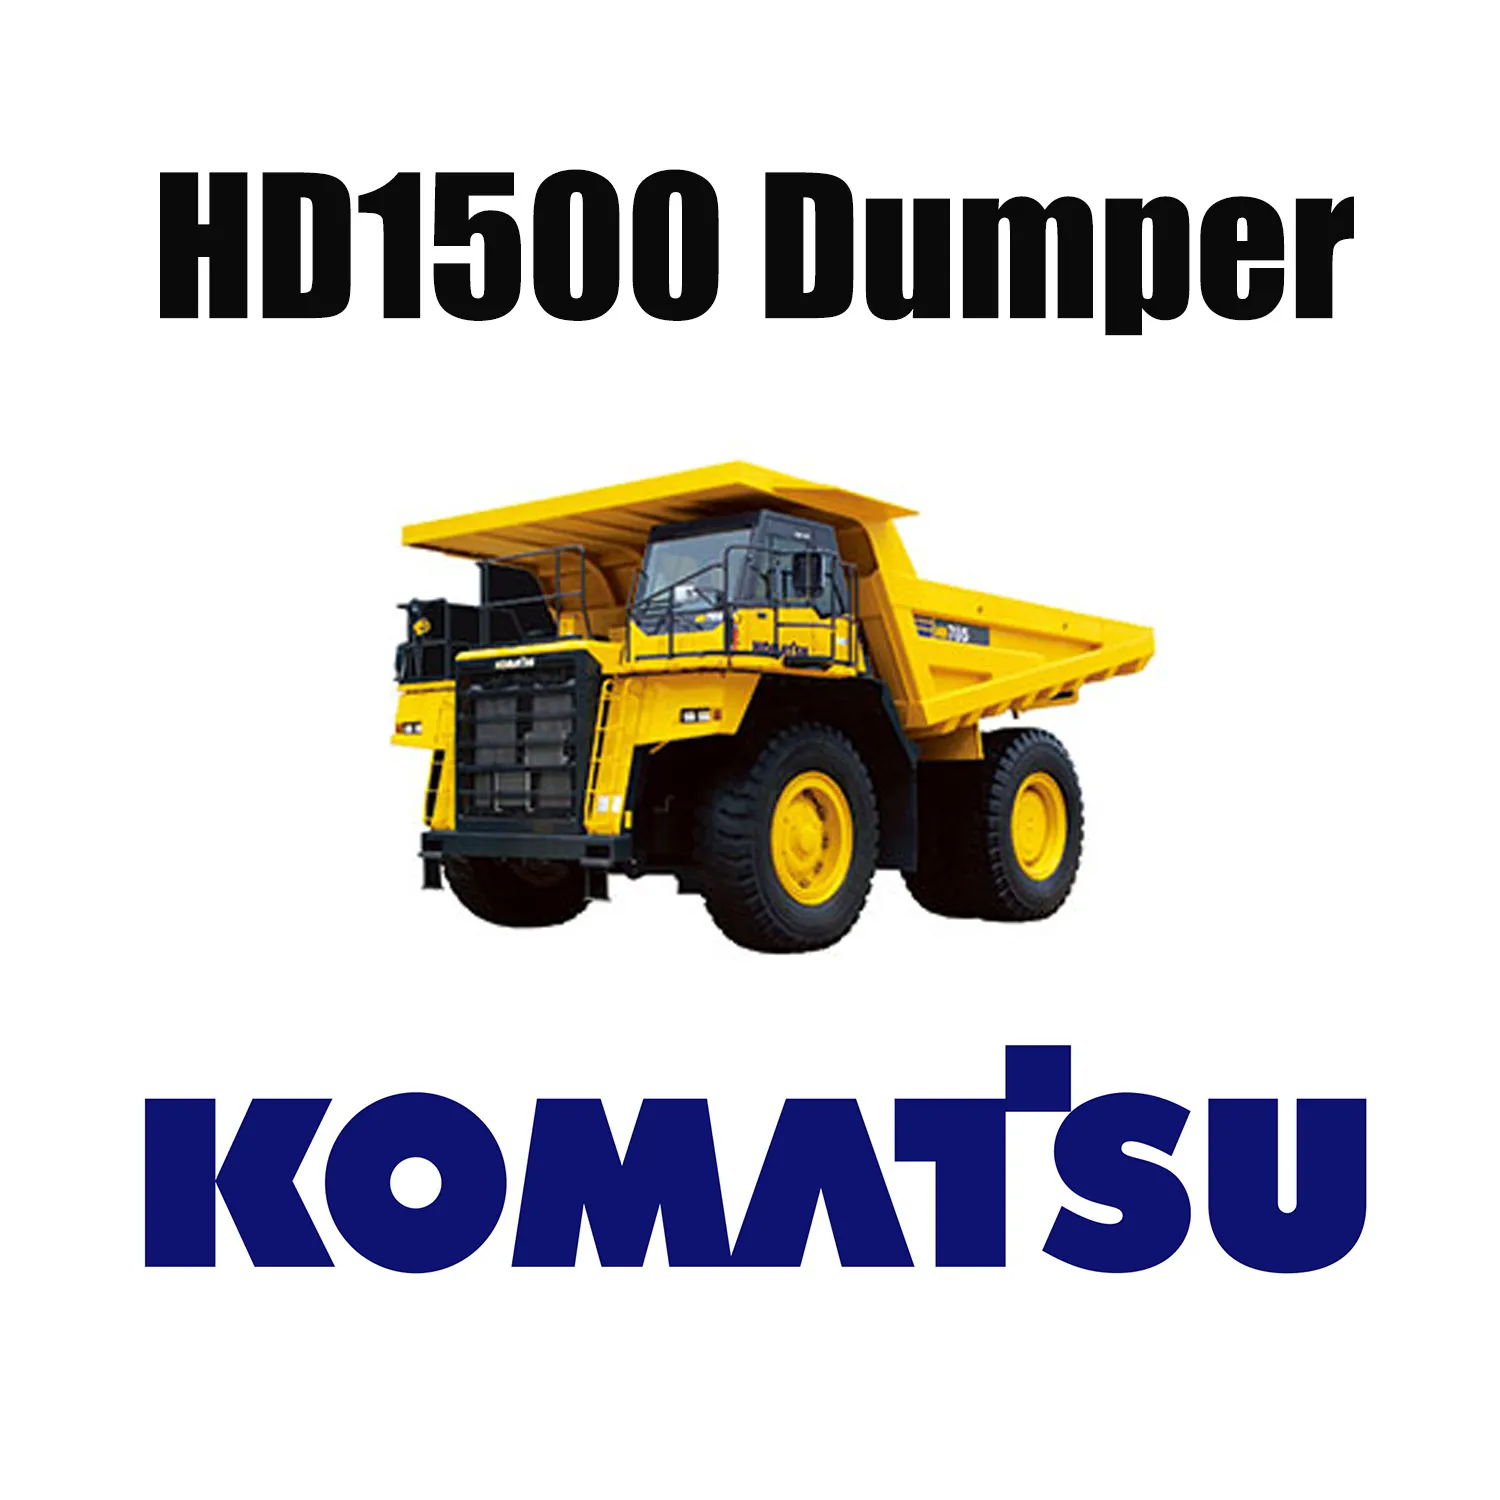 KOMATSUHD1500メカニカルトラックに特殊なEarthMoverタイヤを装着33.00R51